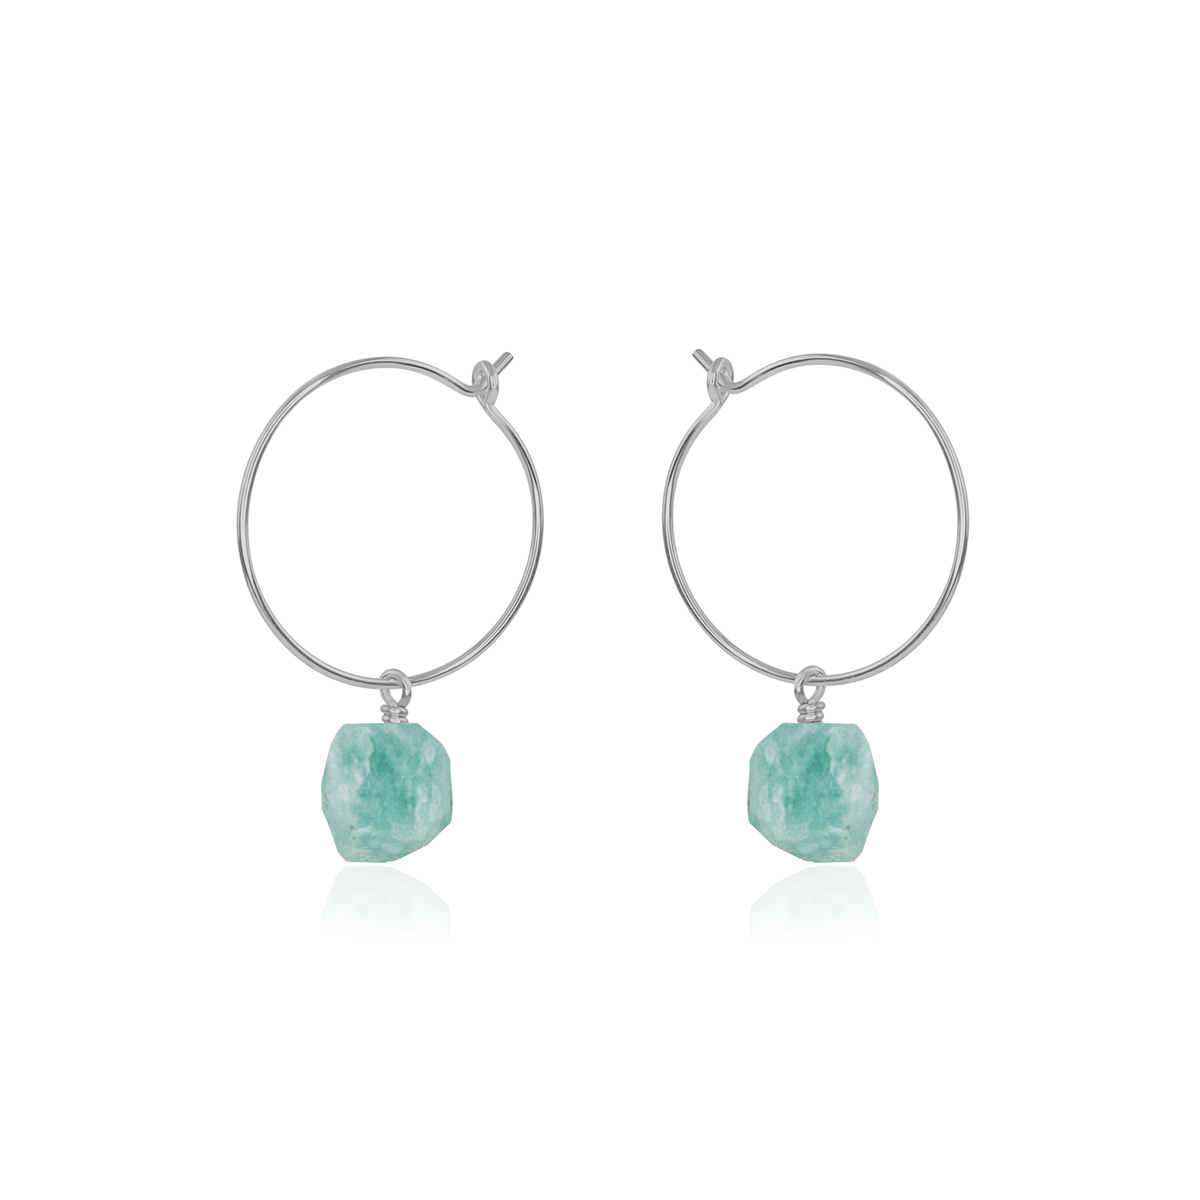 Raw Amazonite Gemstone Dangle Hoop Earrings - Raw Amazonite Gemstone Dangle Hoop Earrings - Stainless Steel - Luna Tide Handmade Crystal Jewellery